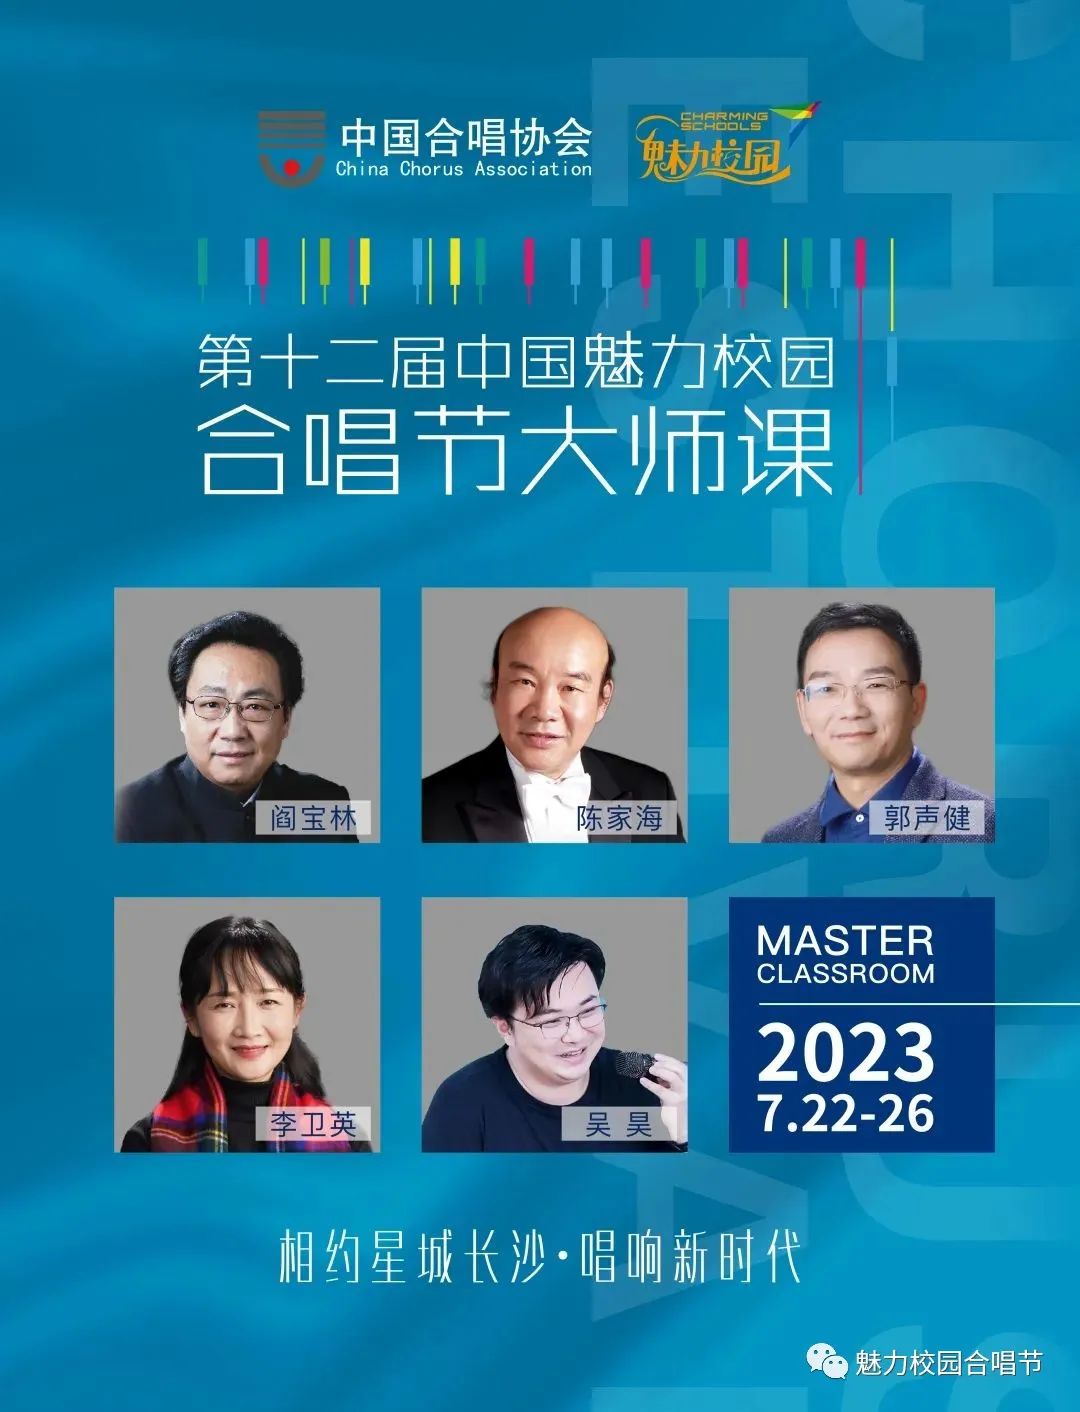 第十二届中国魅力校园合唱节大师课日程安排